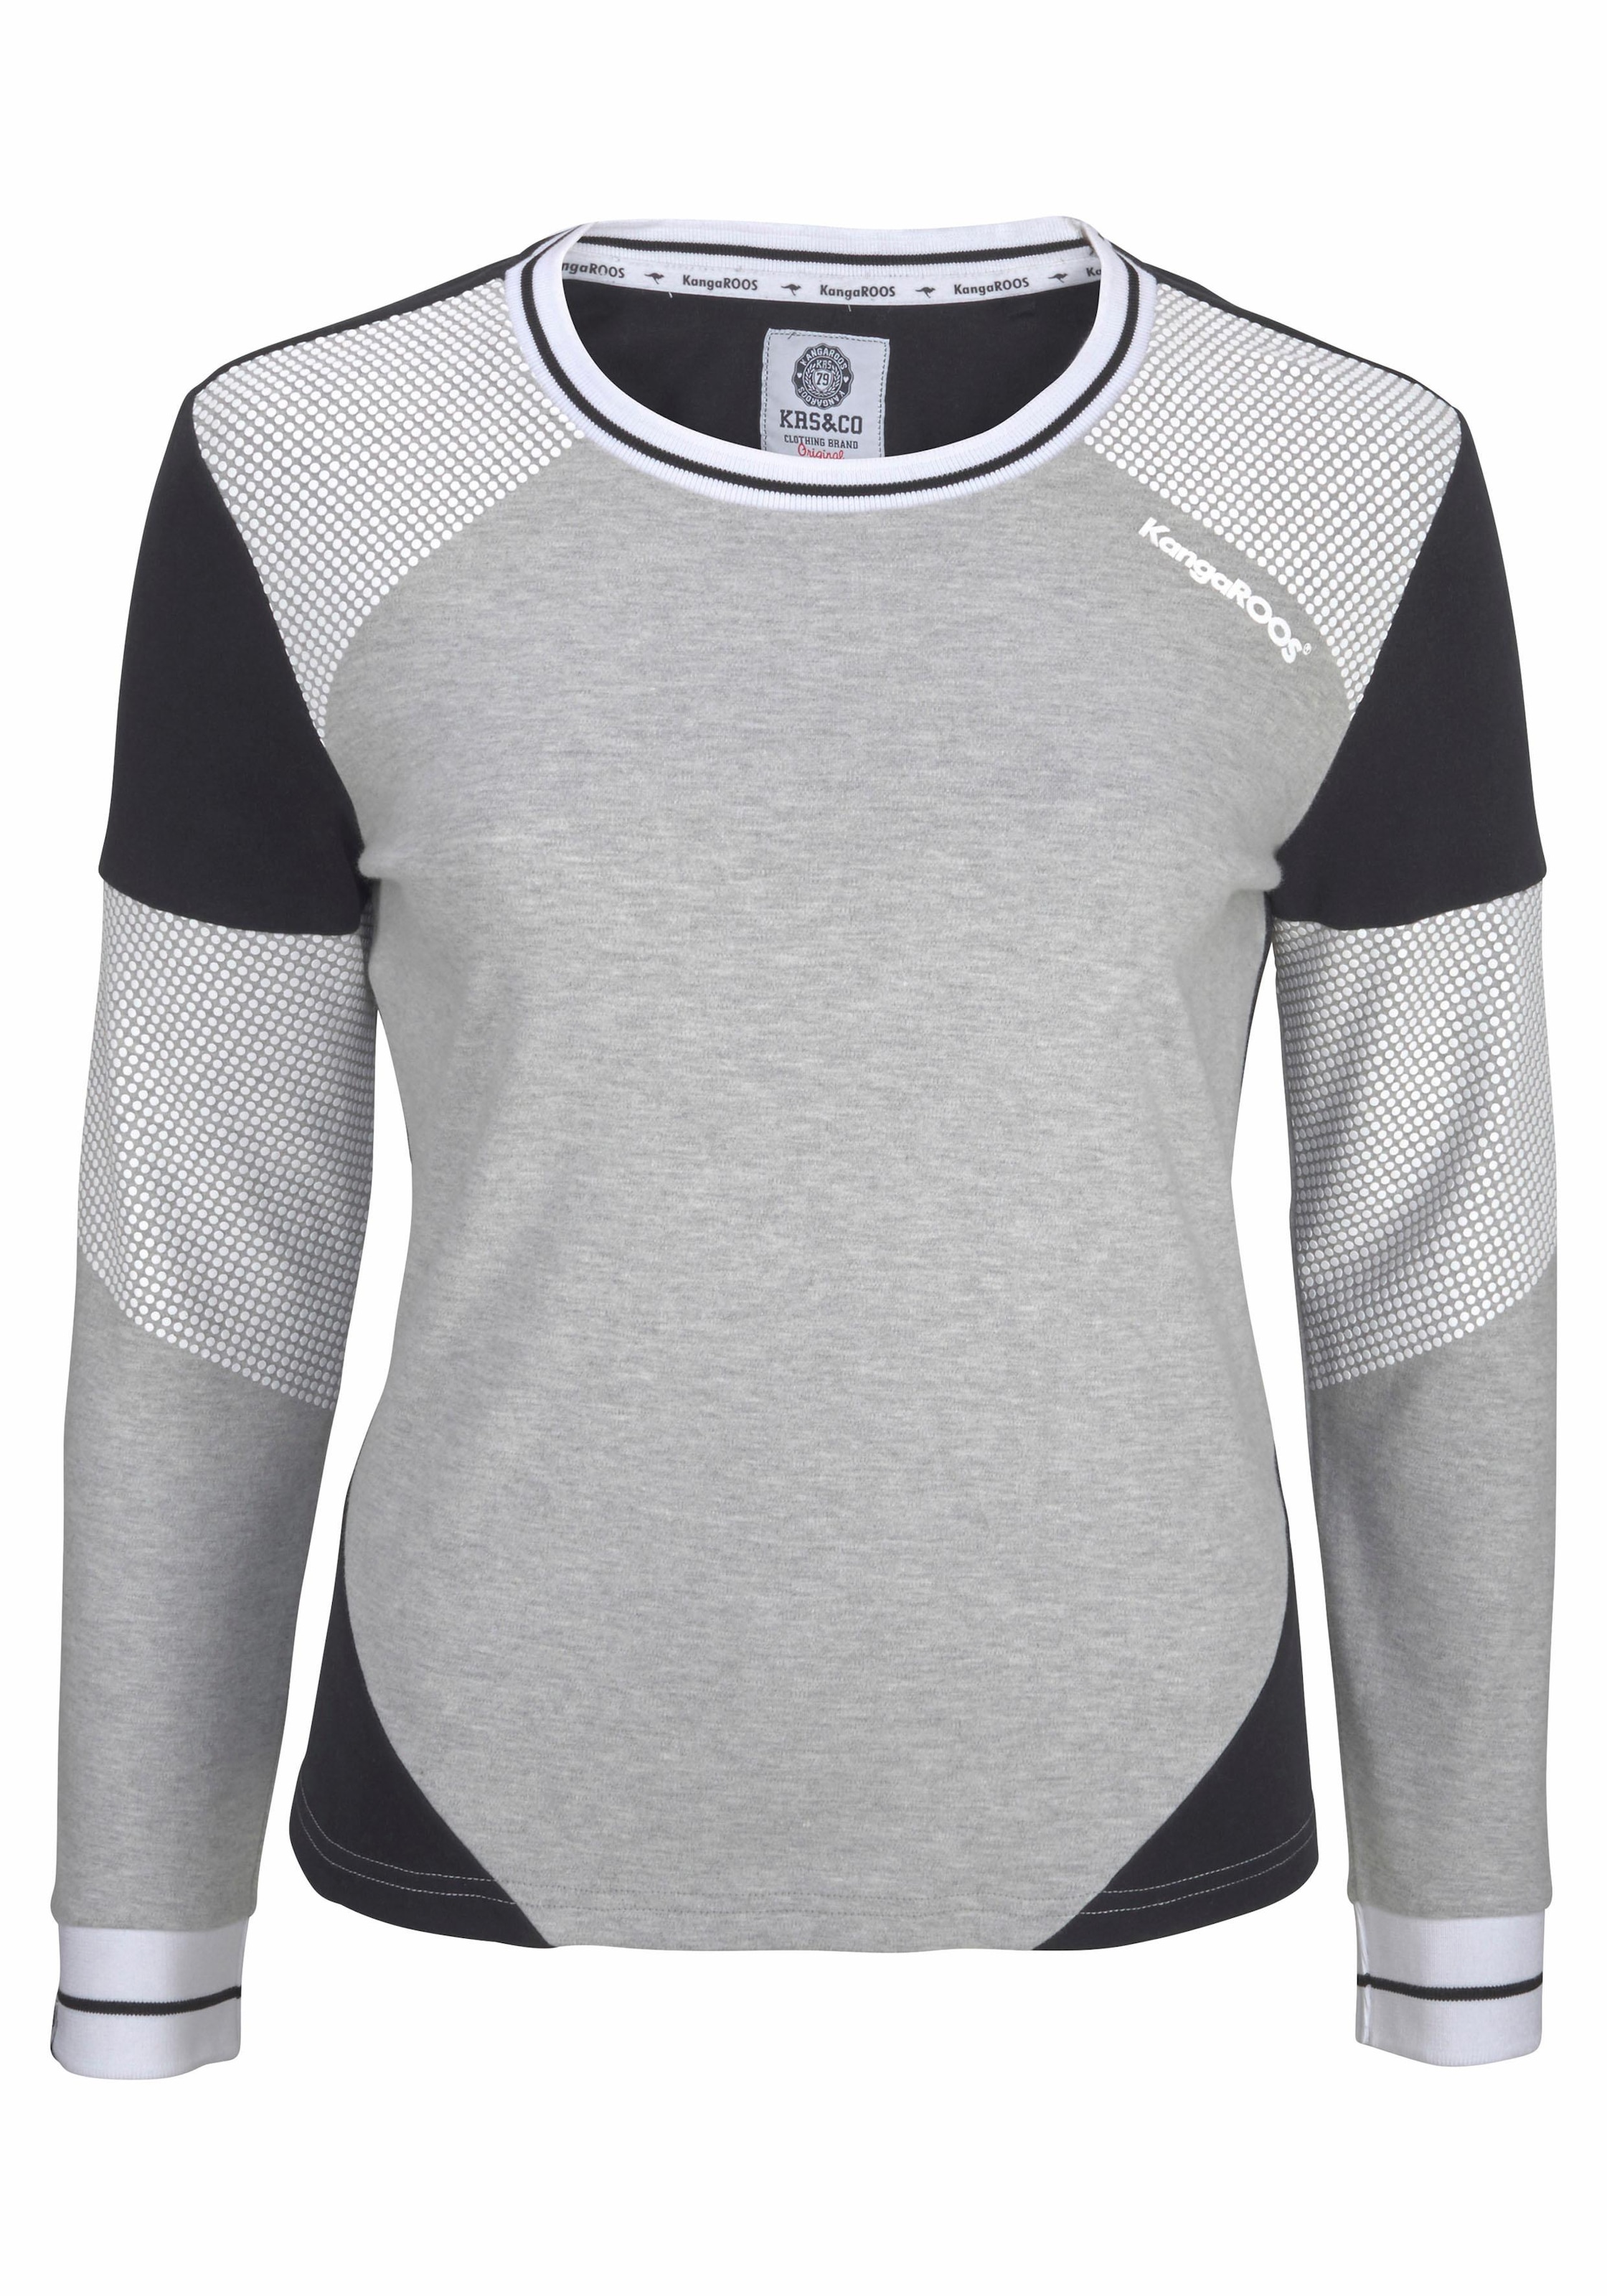 OTTO KangaROOS mit Pünktchen Colorblocking-Design Sweatshirt, Online im Shop im